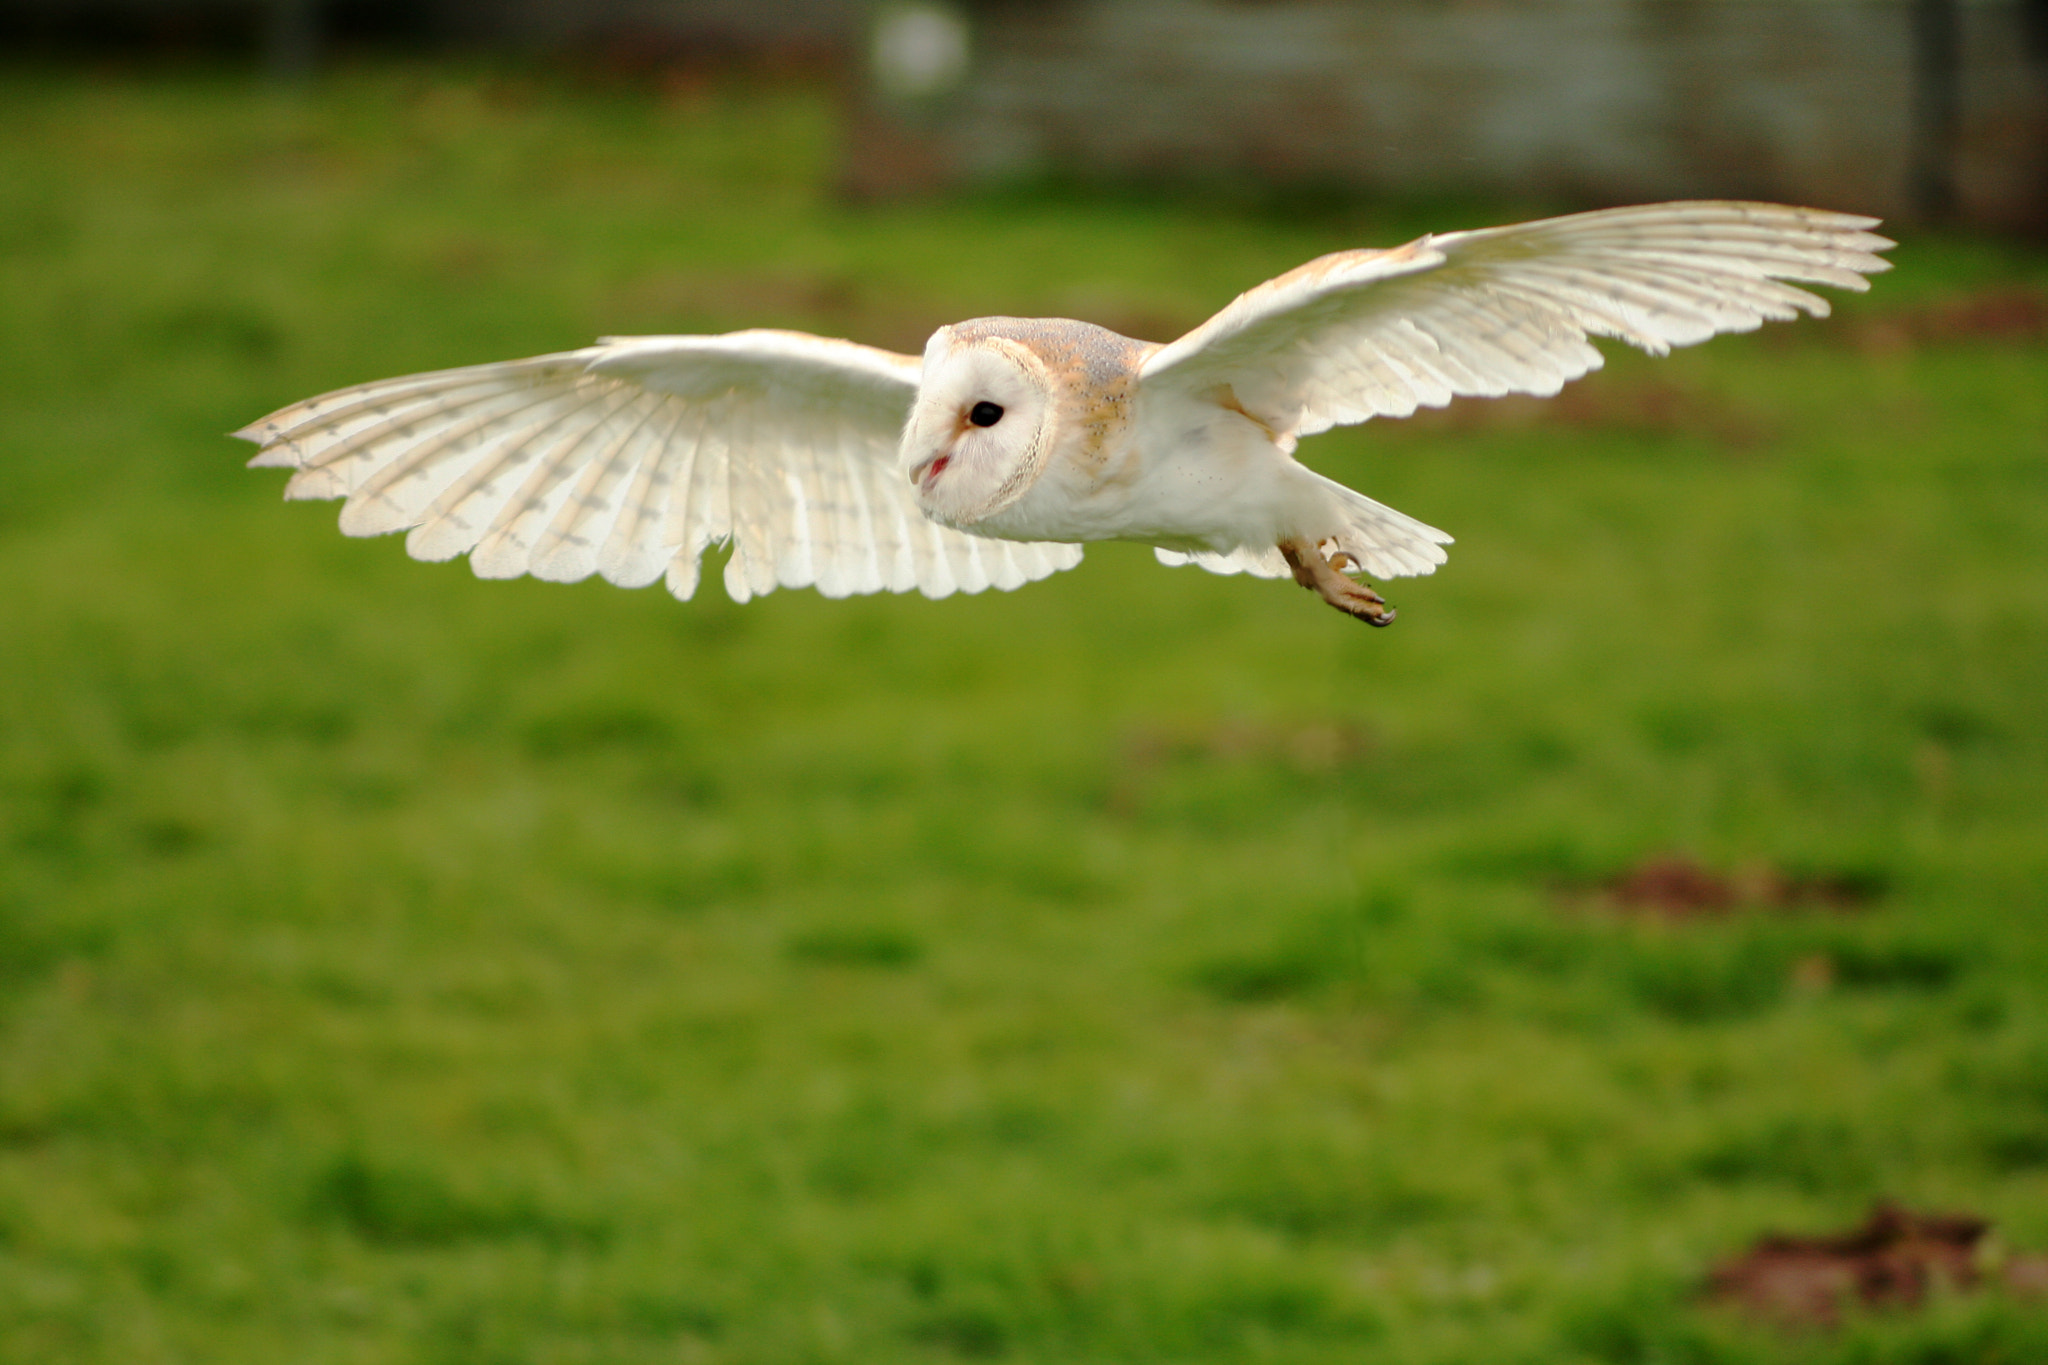 Canon EOS 40D sample photo. Barn owl flying across a field photography